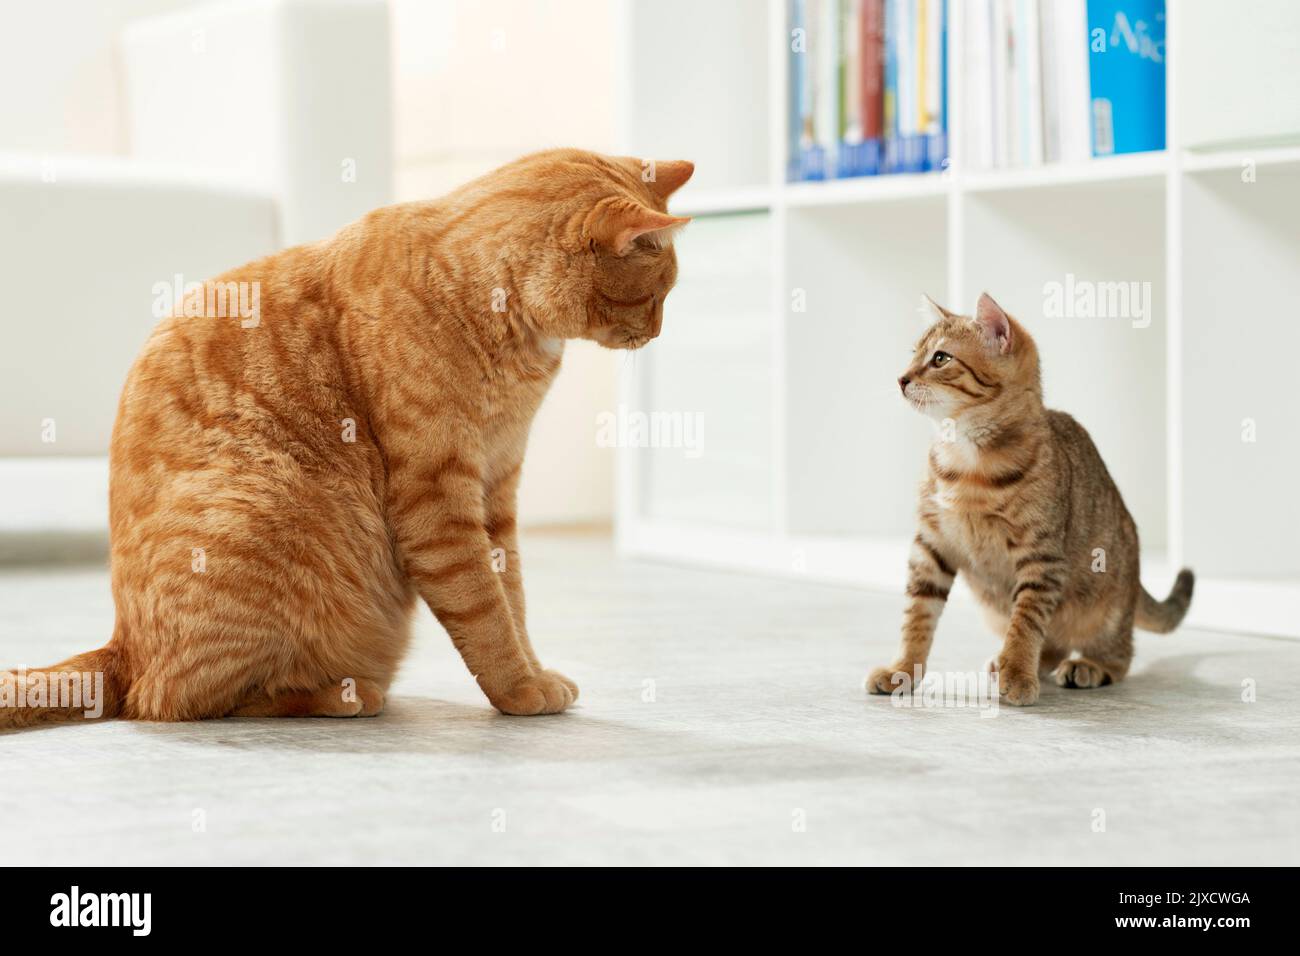 Chat domestique Un chaton tabby et un chat adulte se connaissent. Allemagne Banque D'Images